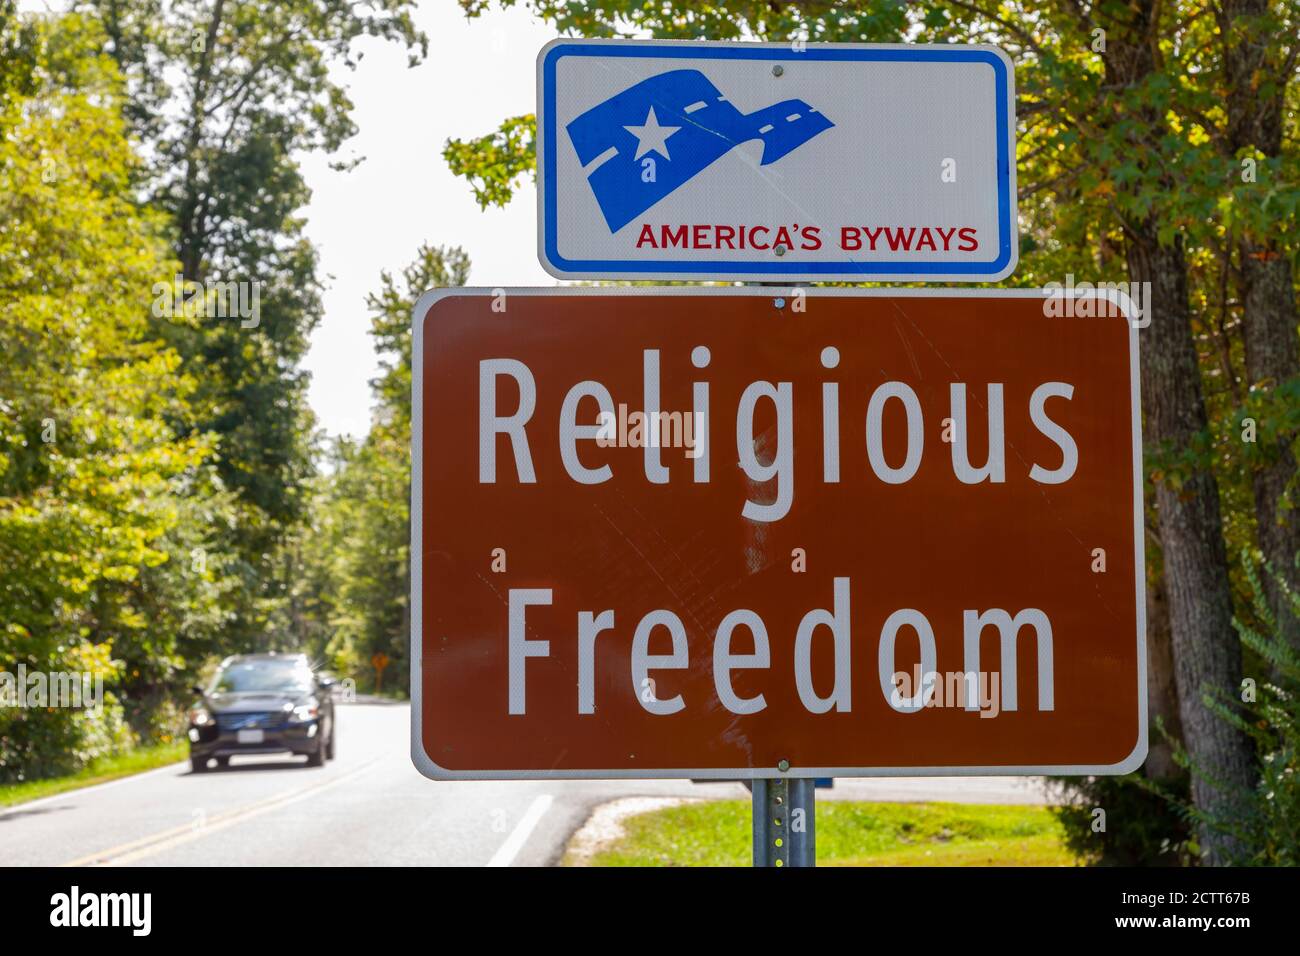 Waldorf, MD, USA 09/19/2020: Straßenschild am Eingang einer der malerischen Nebenstraßen Marylands namens "Religious Freedom" in Bezug auf Southern Maryland bei Stockfoto